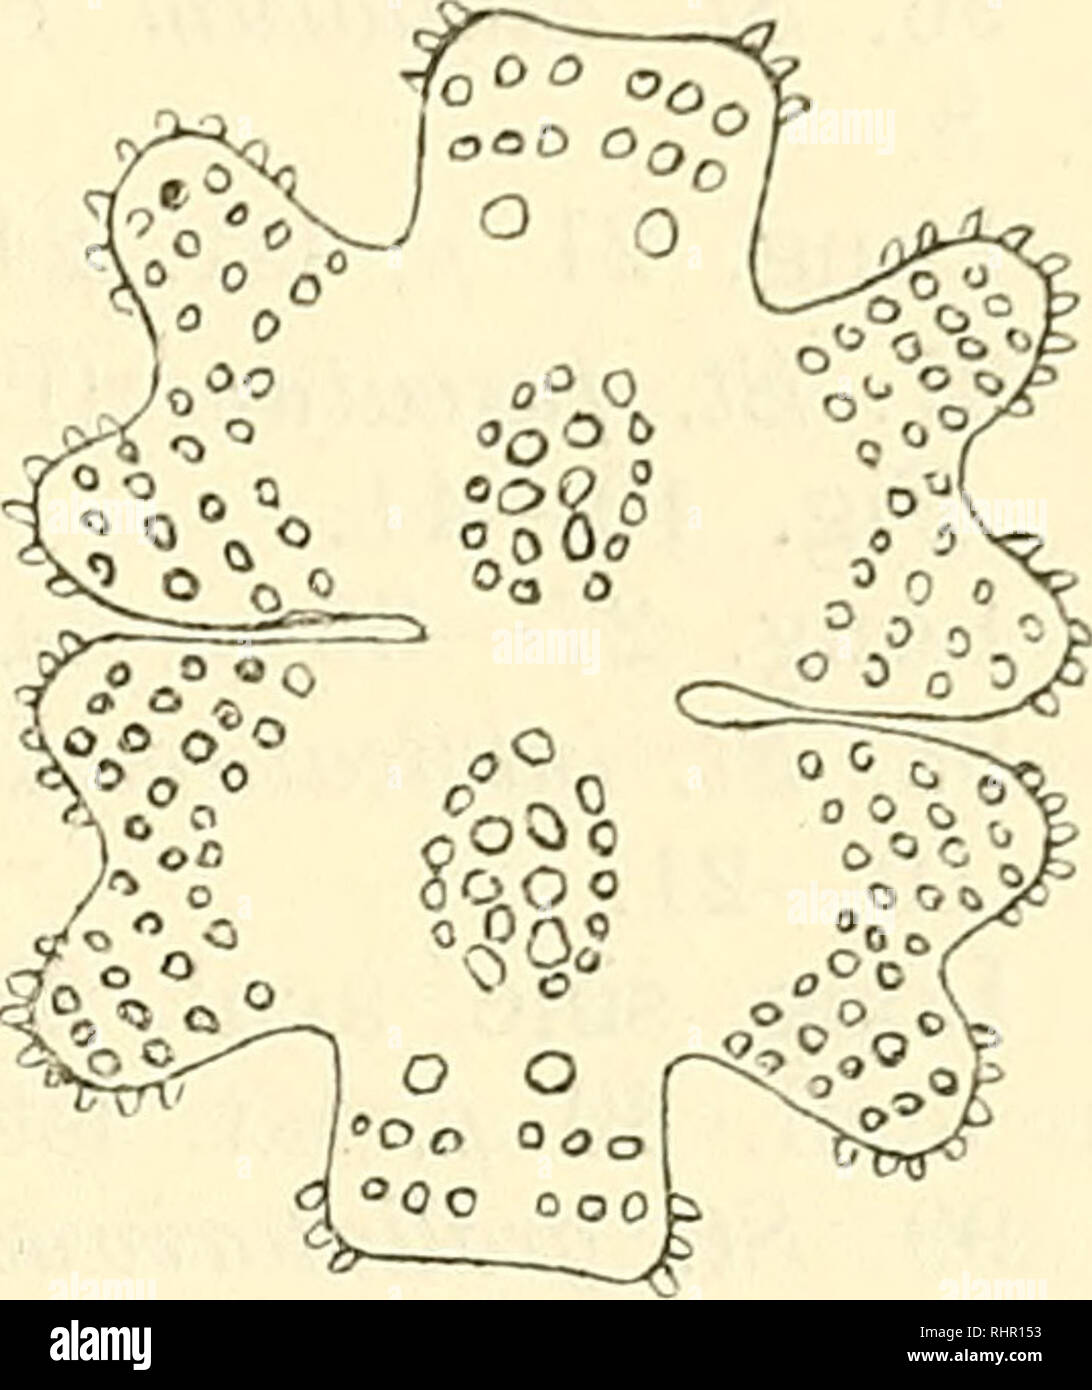 . Beihefte zum botanischen Centralblatt. Plants. Georgevitch, Desmidiaceen aus dem Prespasee in Macedonien. 243 83. E. elegans var. speciosum Boldt — K. Bohlin, Bichag. 27. Fig. 6. Long. 36 /i, lat. 24 //., lat. isth. 5 /^. 84. E. insulare (Wittr.) Roy — West, Brit. Desm. Tab. XL. Fig. 11—13. Long. 21—22 /i, lat. 15 //, lat. isth. 3 //. 85. E. monocylum. Nordst. var. polonicum Racib. Forma. Icon. nostr. 4. Long. 51—57 /j., lat. 43—45 /i, lat. isth. 9—10 a, lat. lob. polar. 15. Diese Form unterscheidet sich von der von Raciborski beschriebenen (De nonnulis Desmidiaceis novis vel minus cognitis, Stock Photo